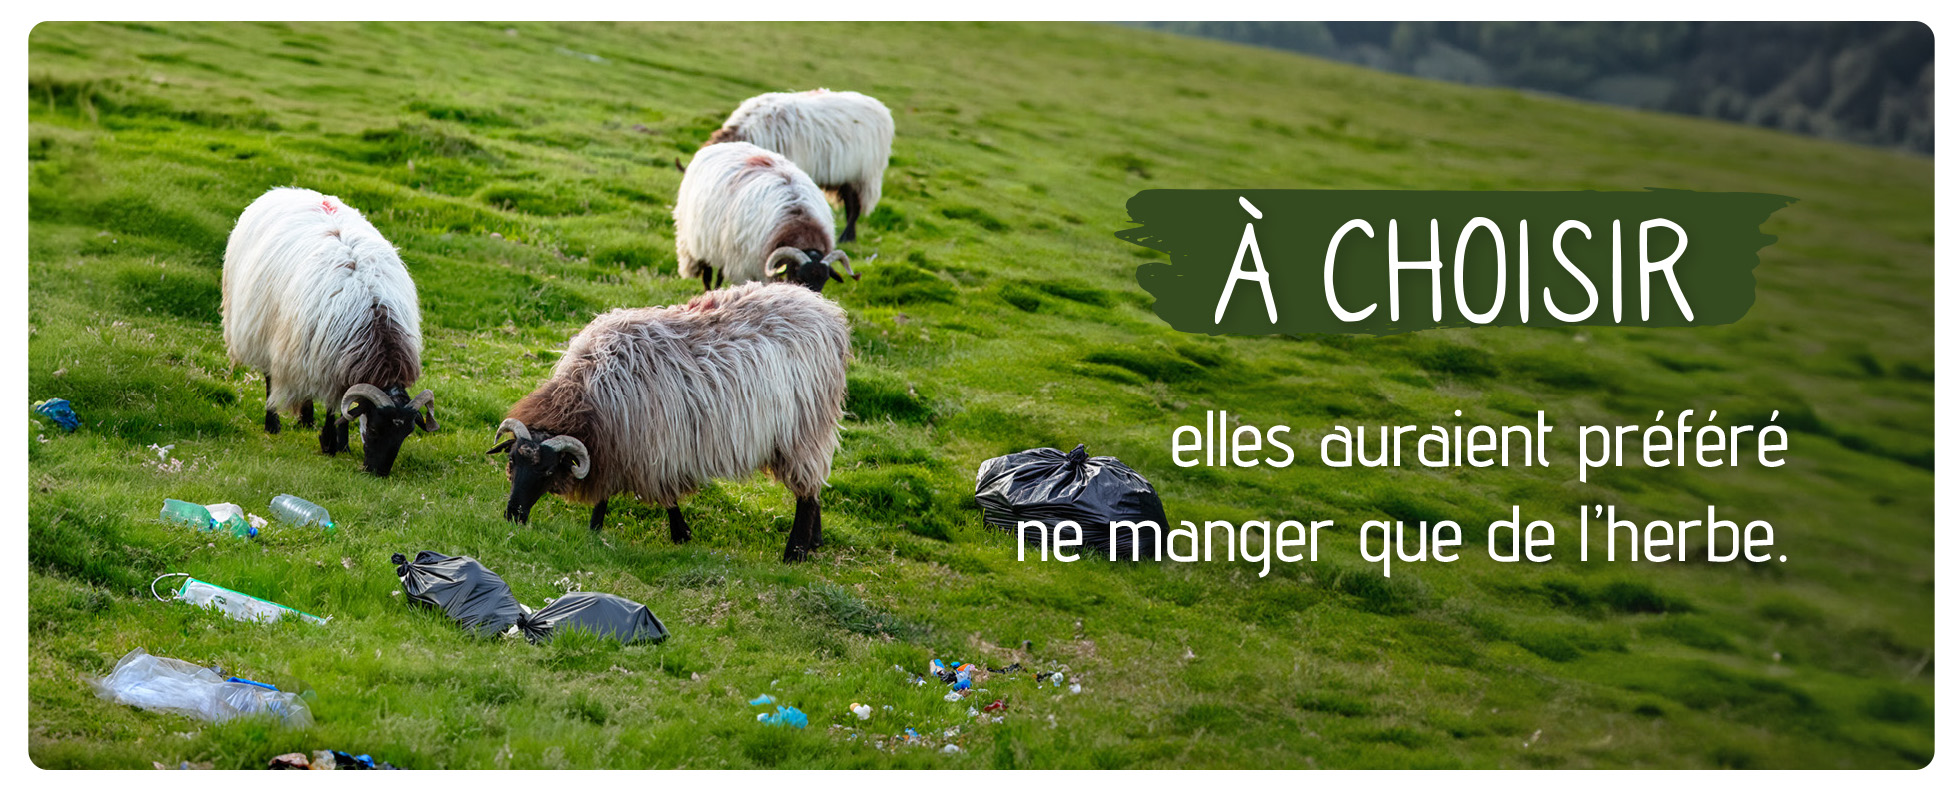 Moutons qui broutent l'herbe au milieu de déchet avec un message disant : à choisir, ils auraient préféré ne manger que de l'herbe